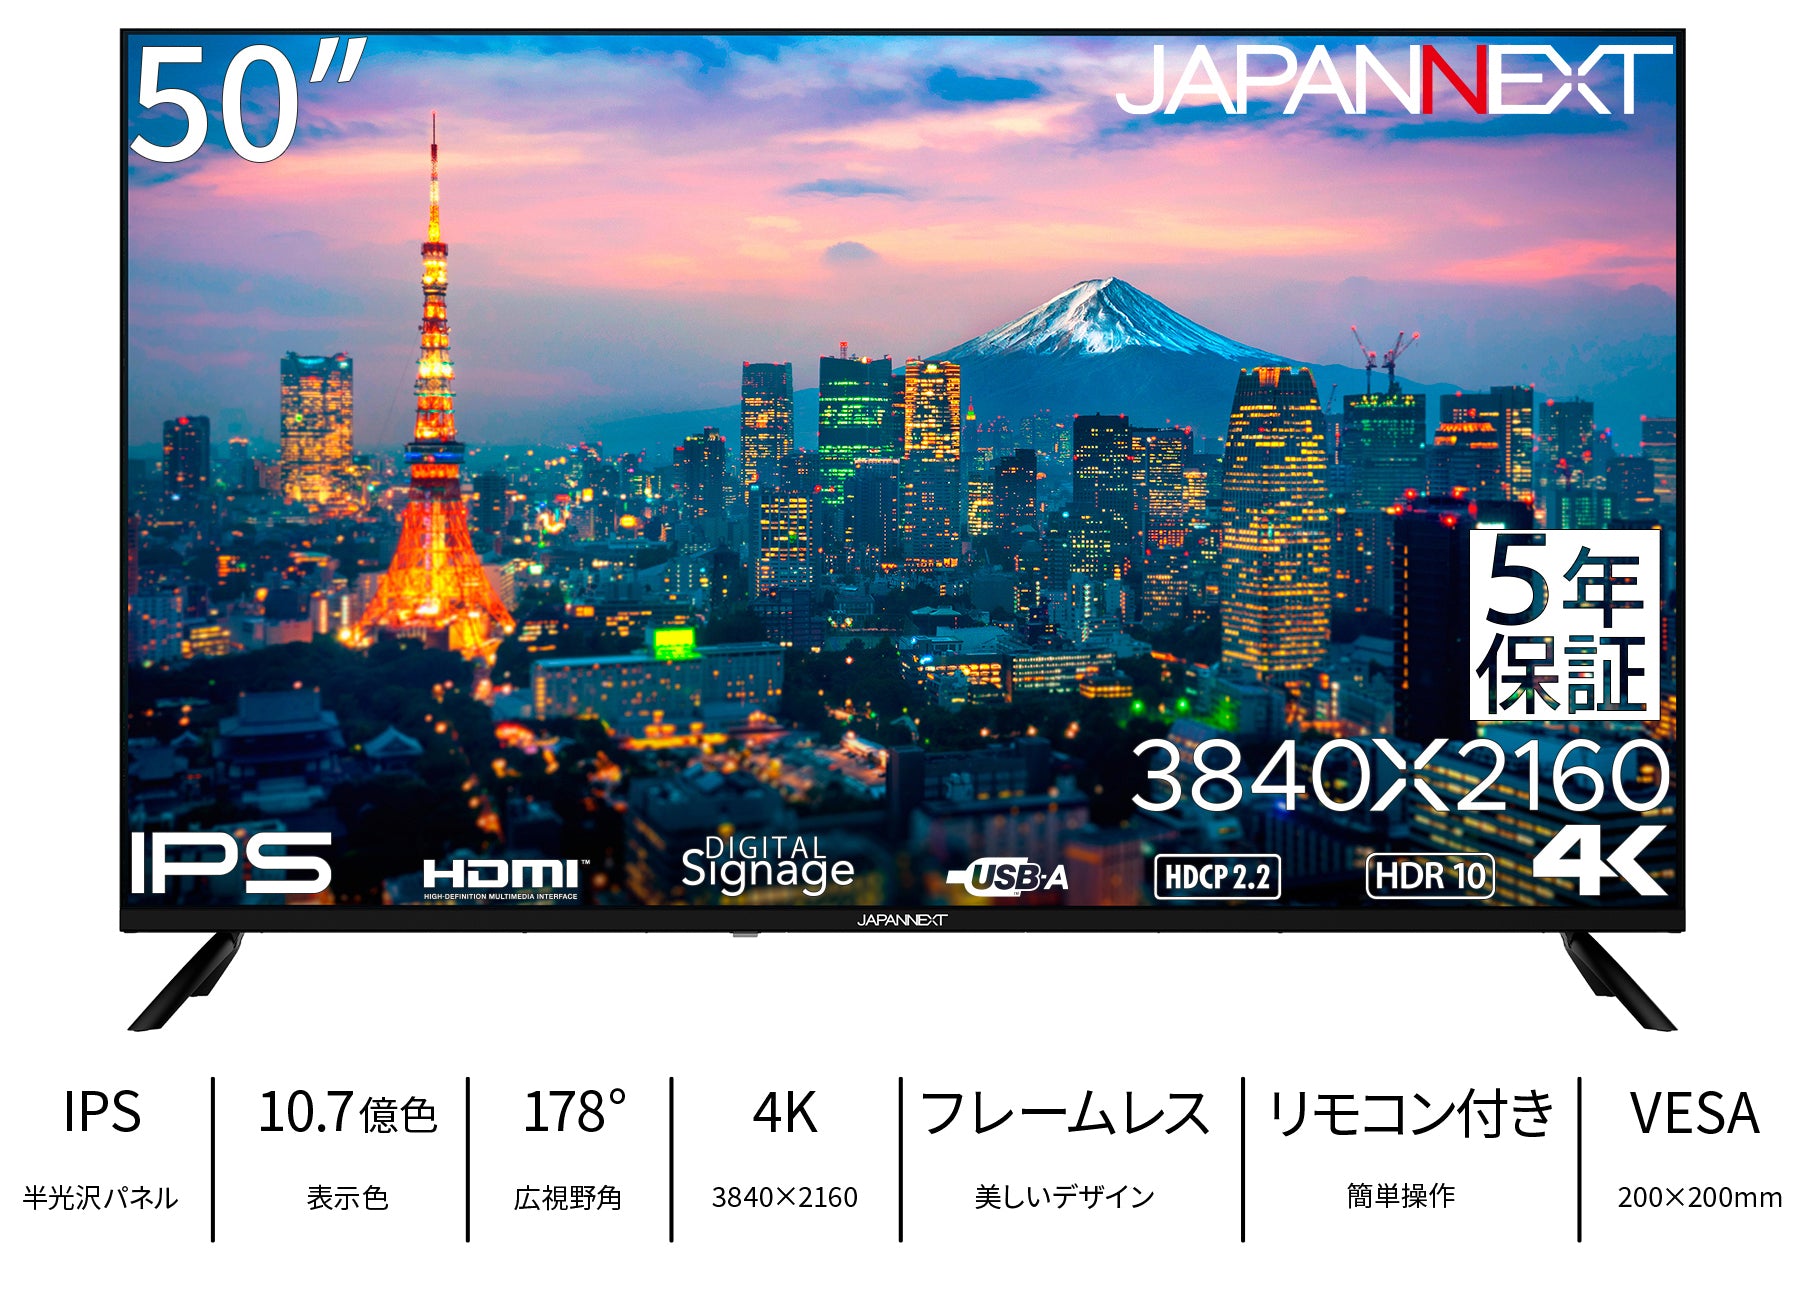 5年保証モデル】JAPANNEXT 50インチ IPSパネル搭載 大型4K液晶モニター ...